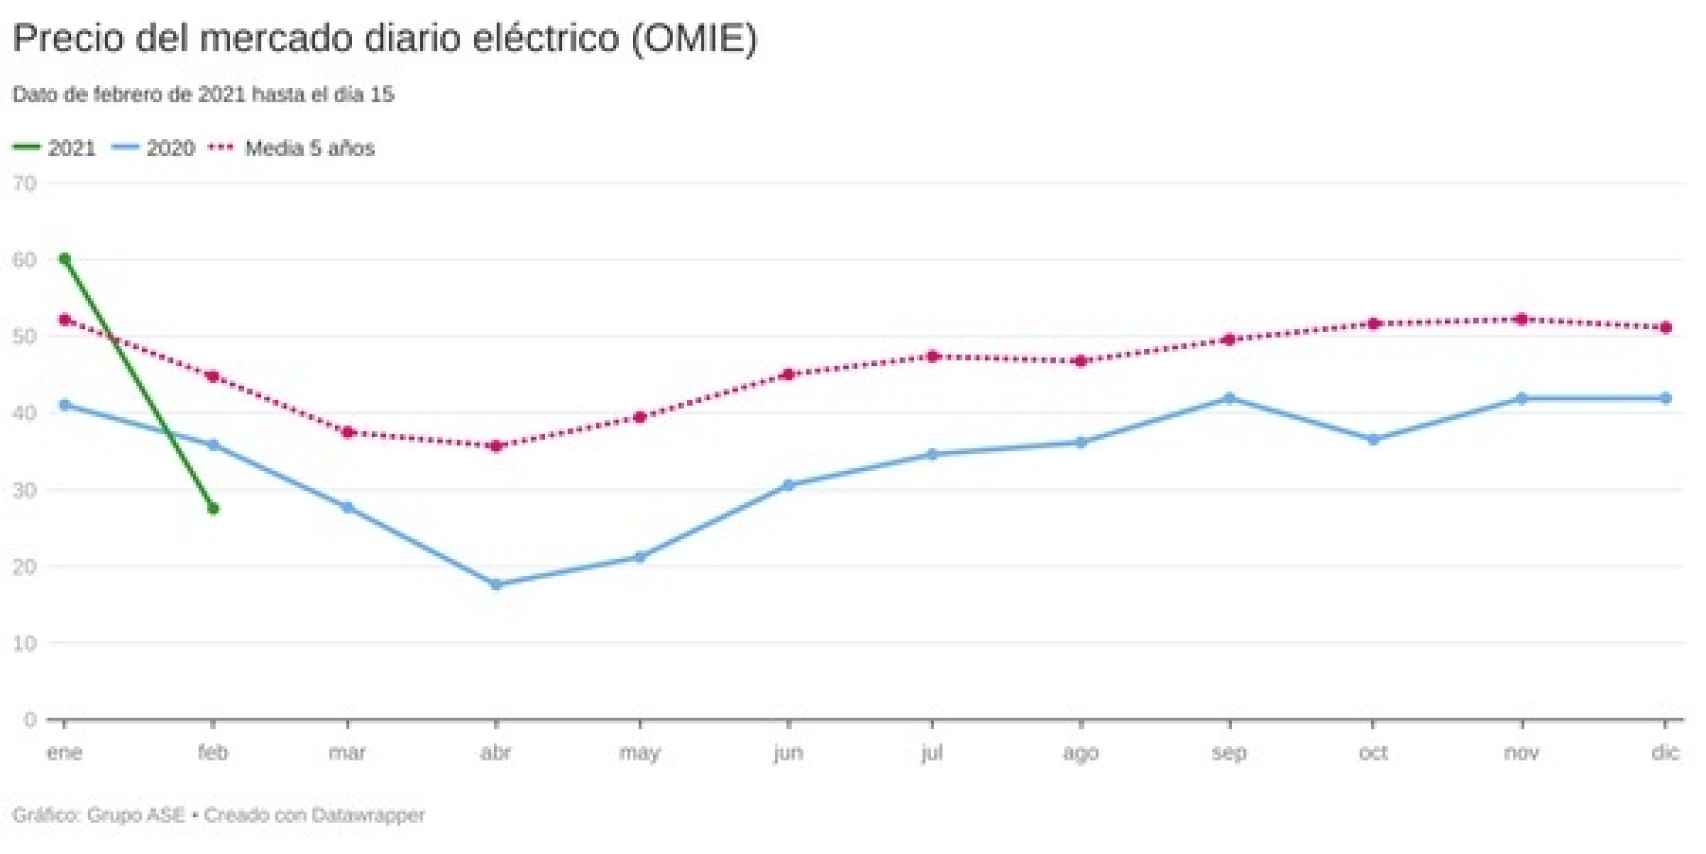 Gráfica de precios del mercado eléctrico diario. Fuente- Grupo ASE